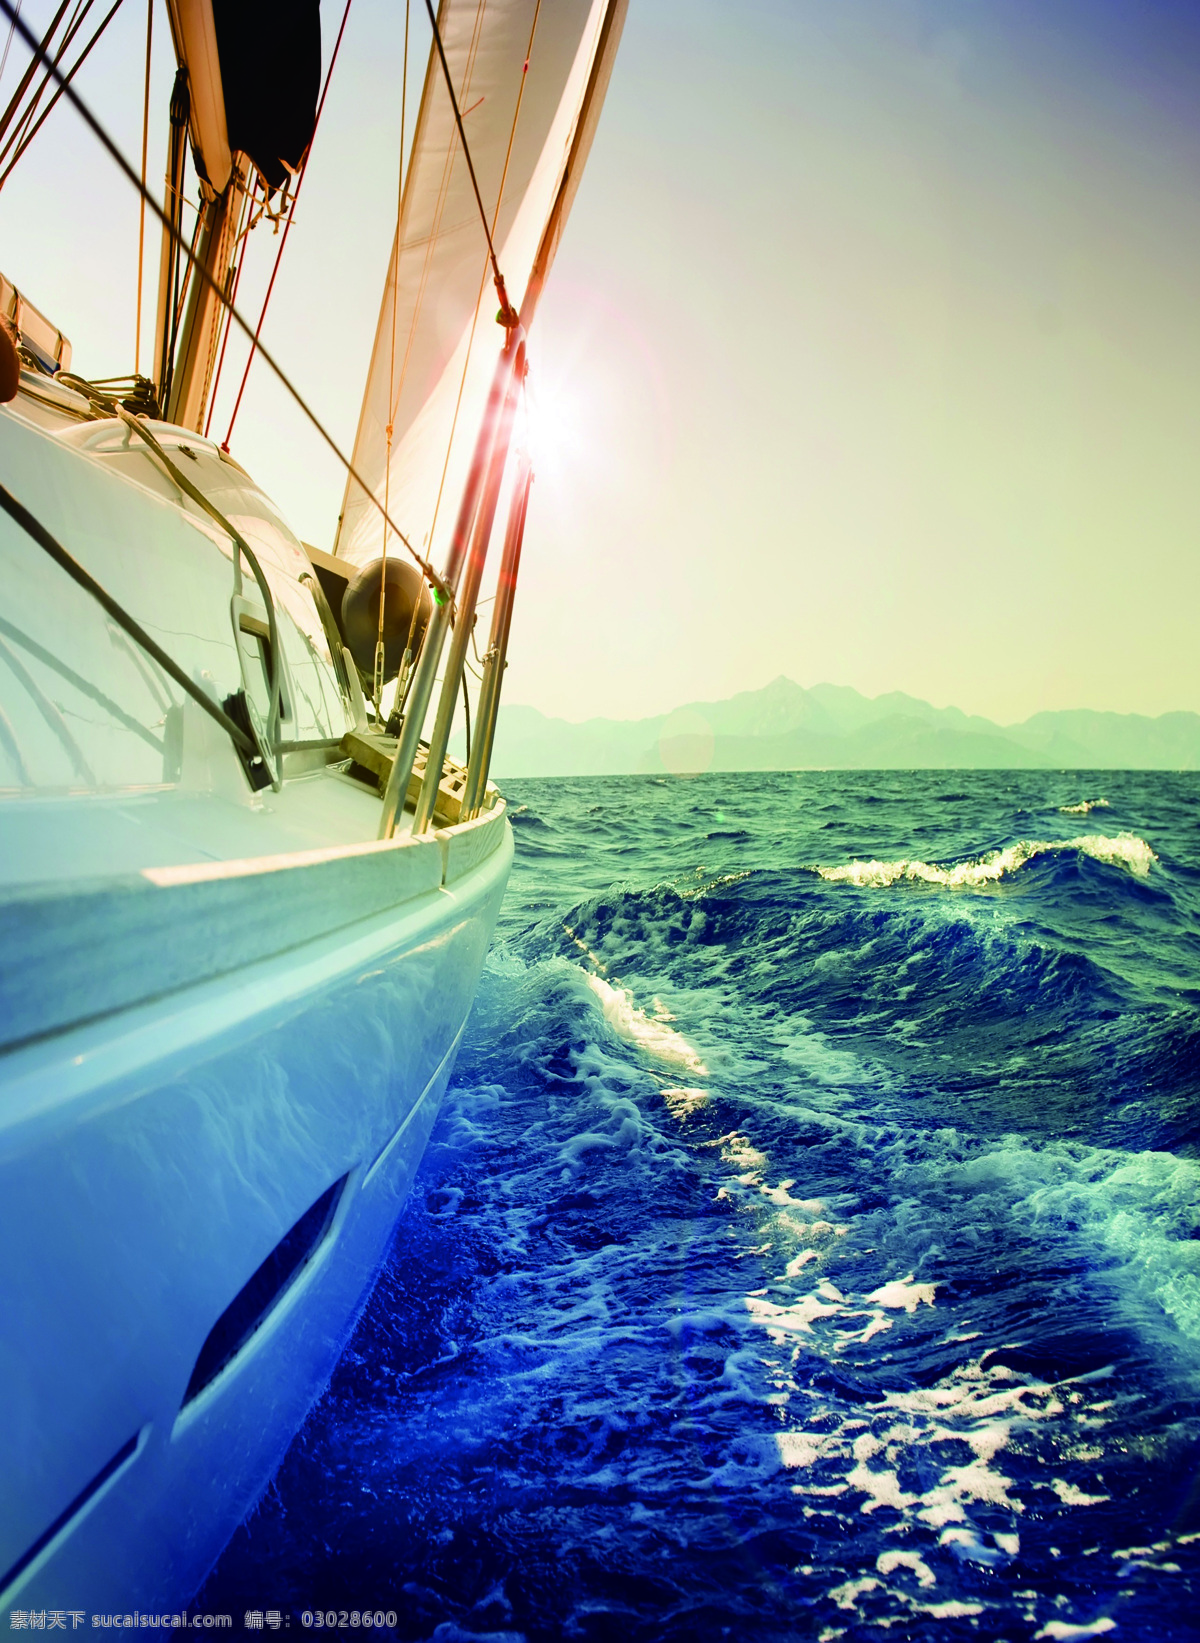 航海高清图 航海 海景 帆船 大海 海浪 风景 出海 海水 海域 自然风景 蓝色